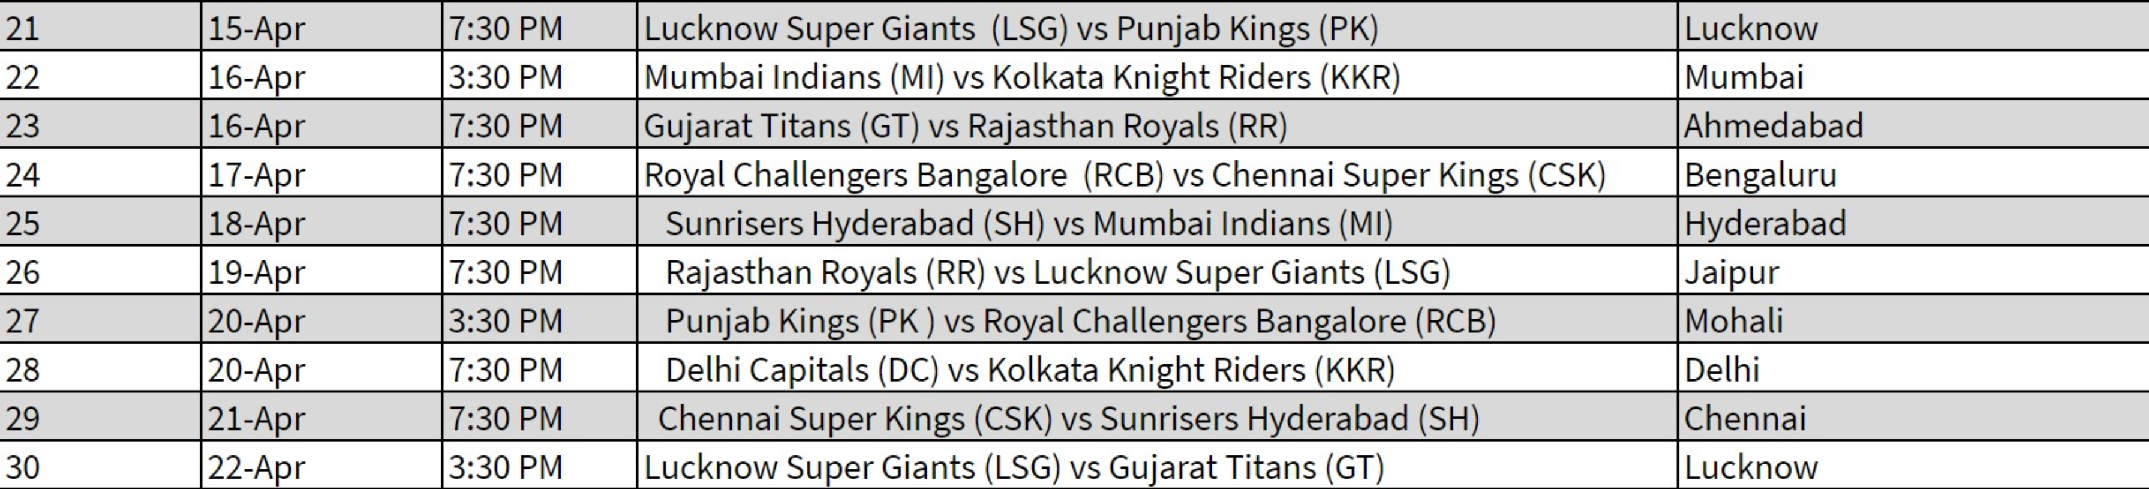 full schedule of IPL 2023